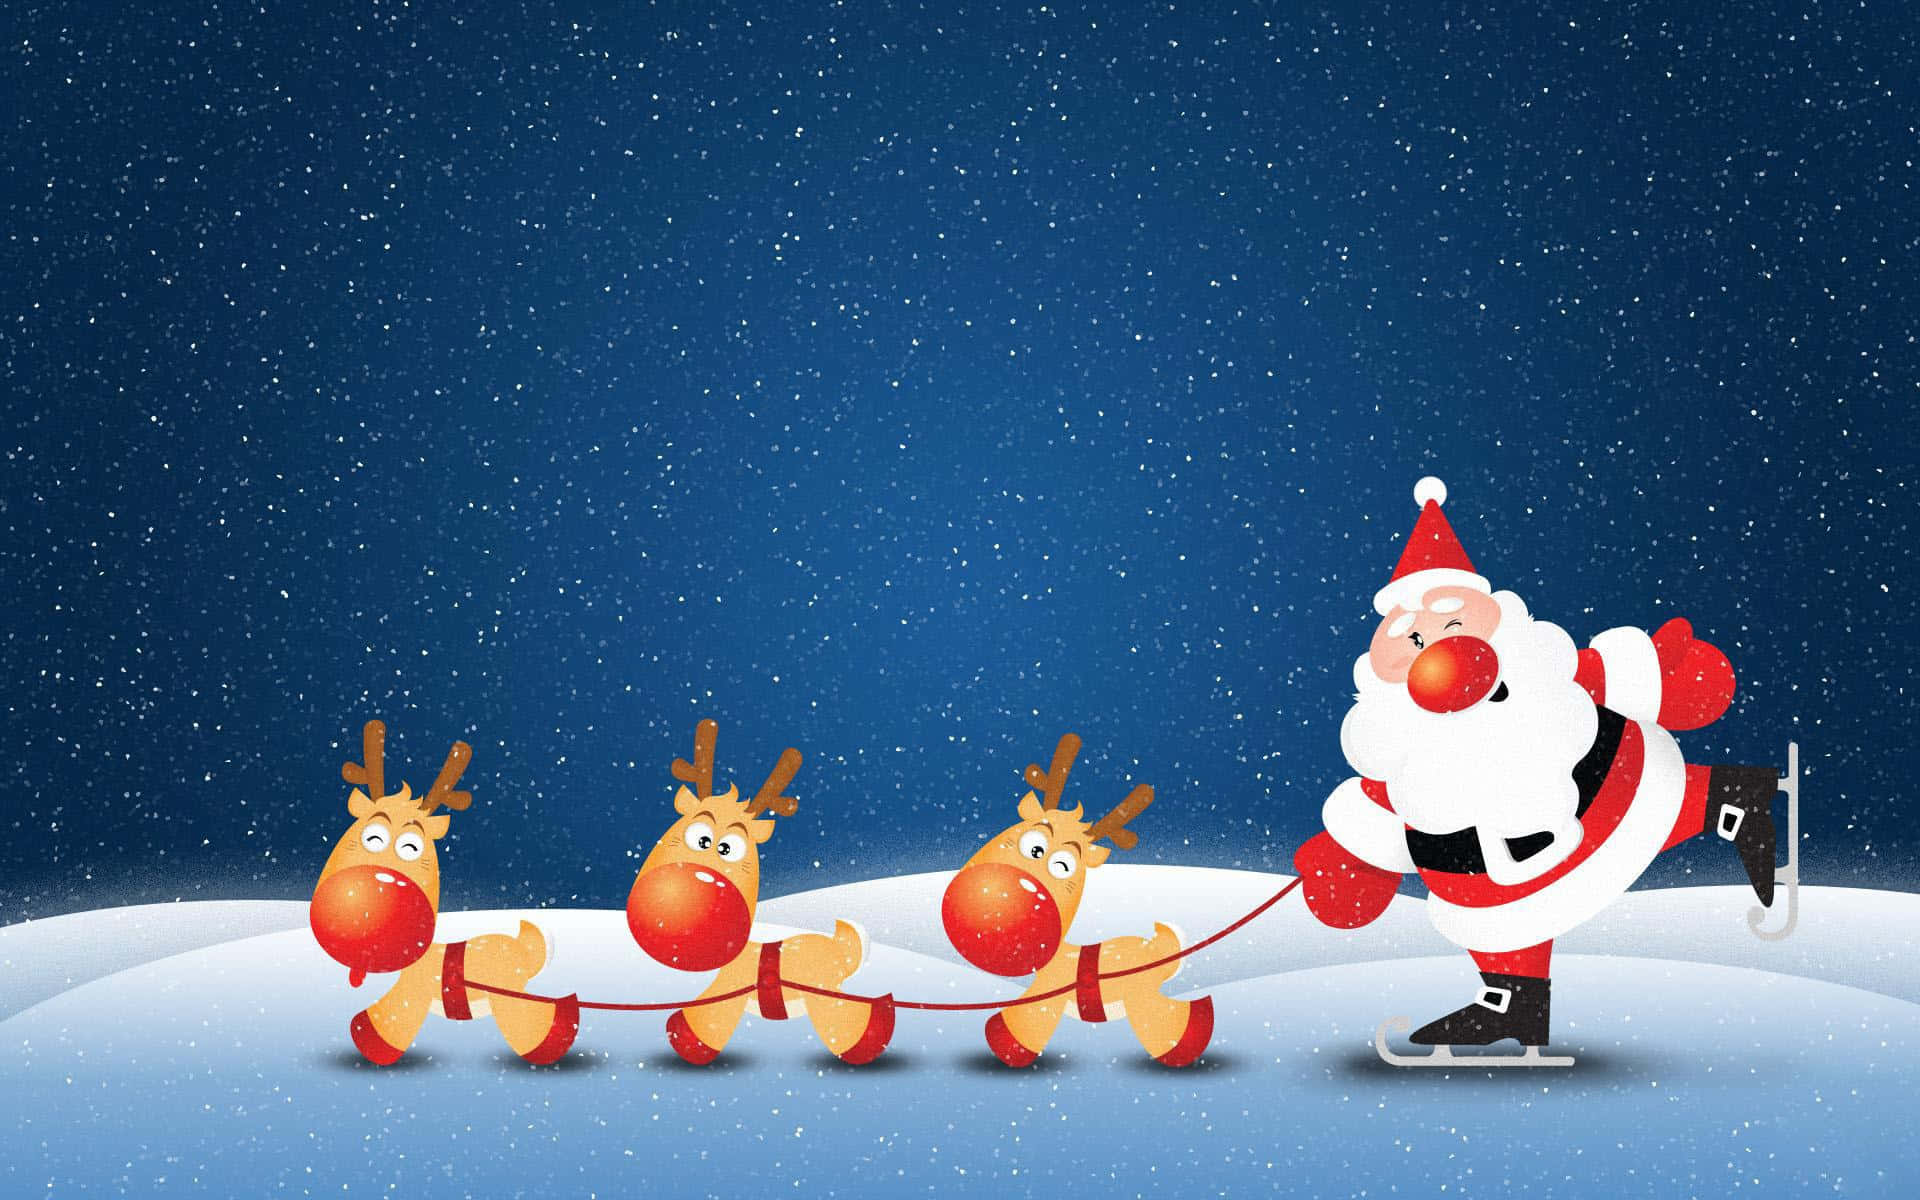 Imagende Navidad De Un Reno De Dibujos Animados Con Santa Claus Patinando